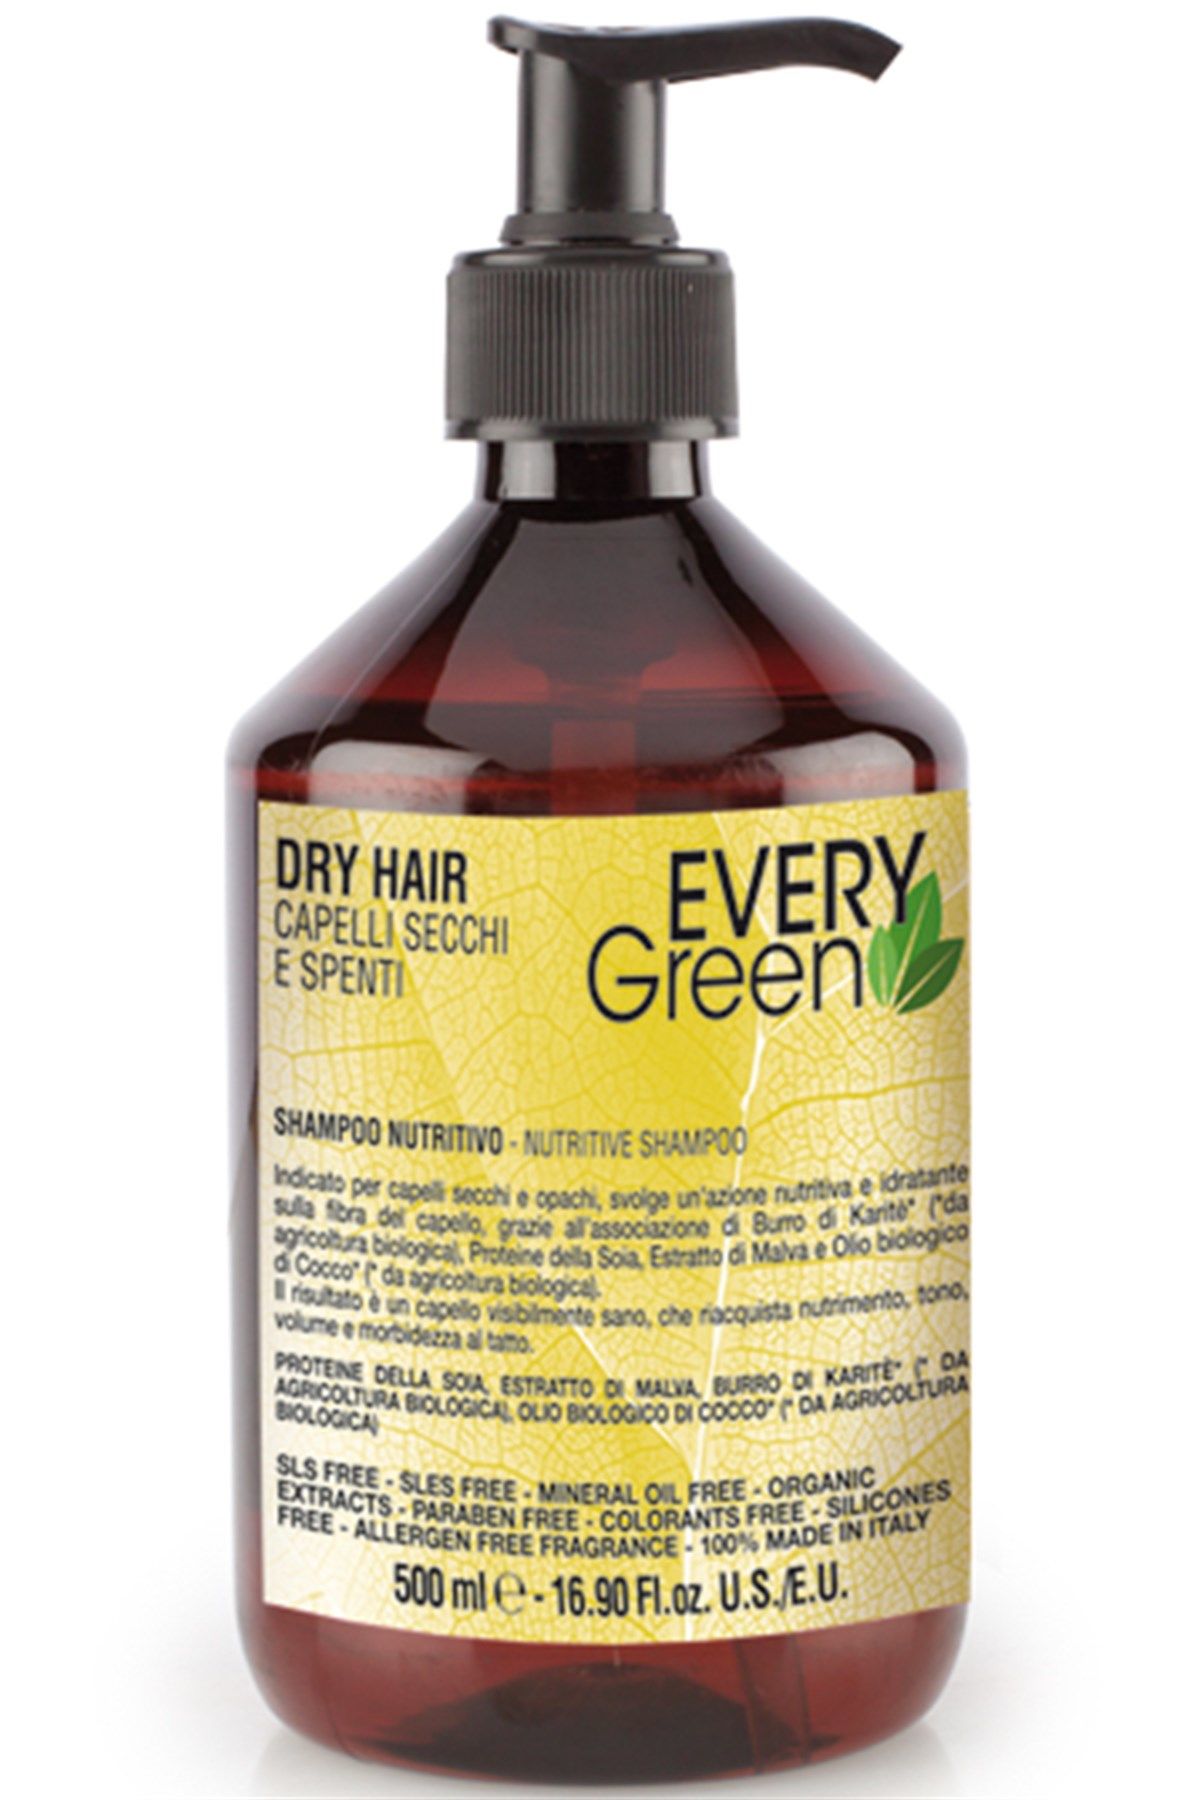 EveryGreen Dry Hair Nutritive Shampoo - Kuru Saçlara Özel Bakım Şampuanı 500 Ml.